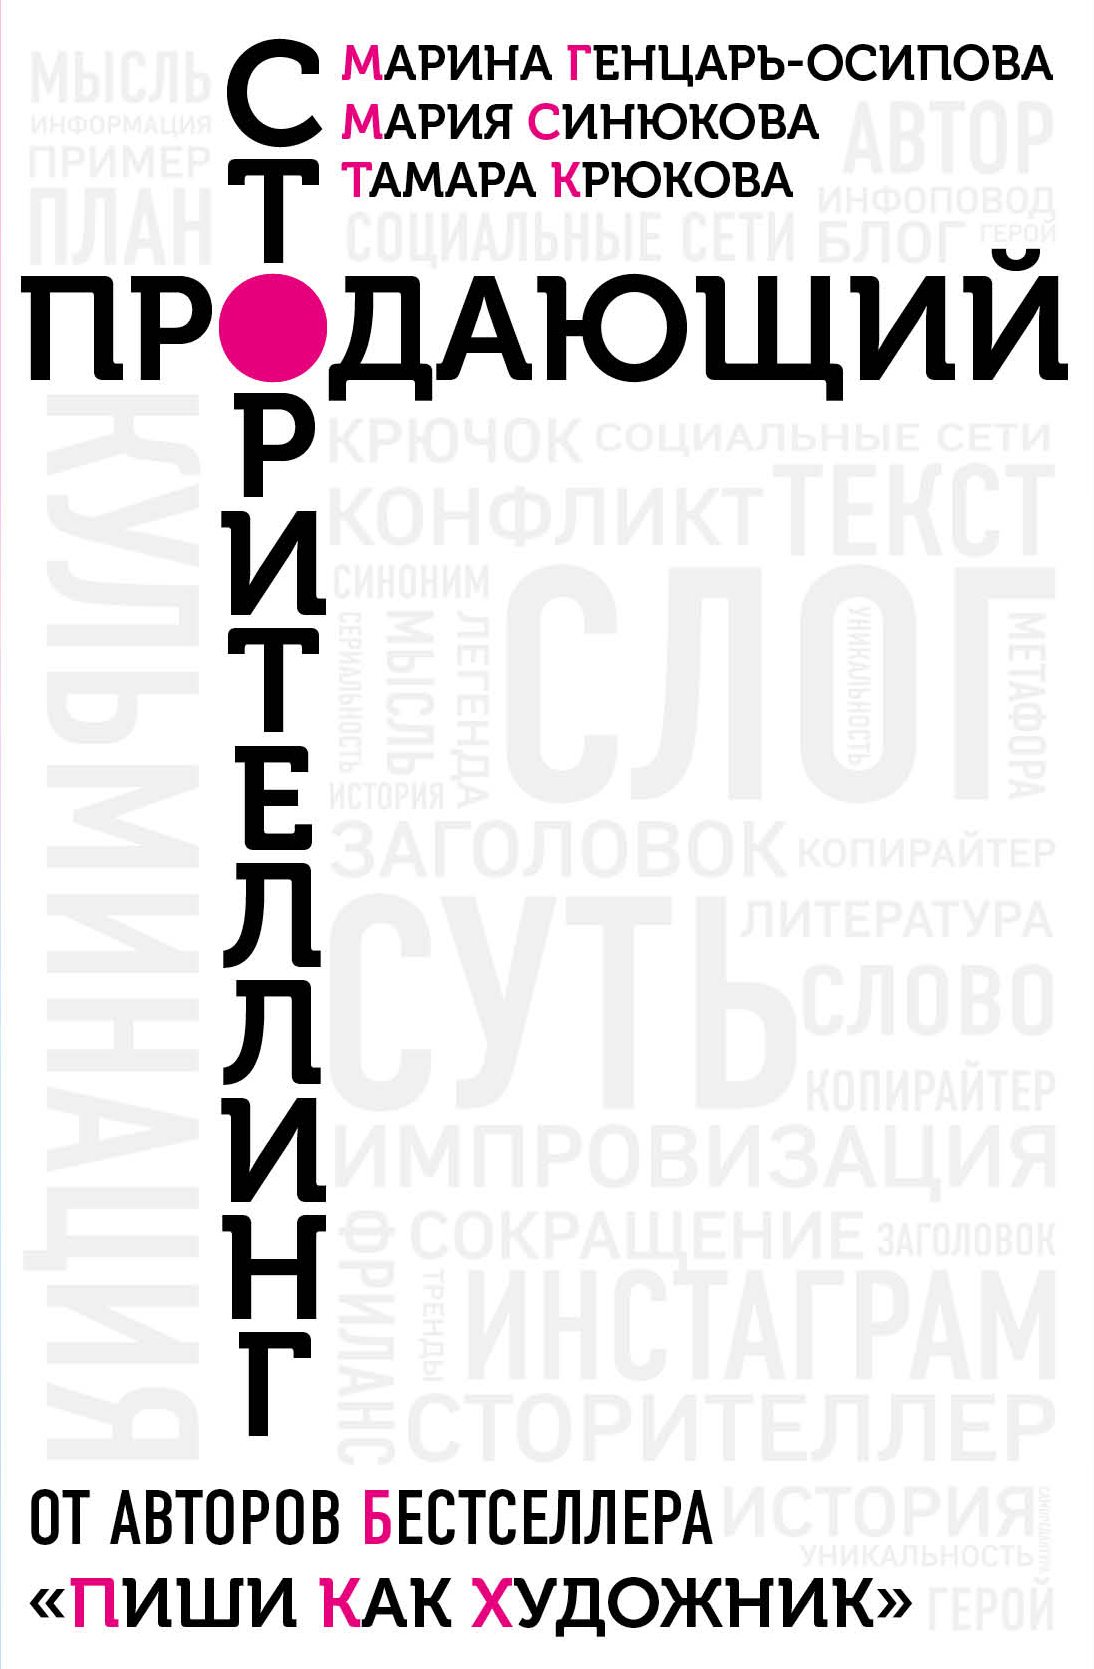 Генцарь-Осипова М., Синюкова  М - Продающий сторителлинг. Как создавать цепляющие тексты (16+)